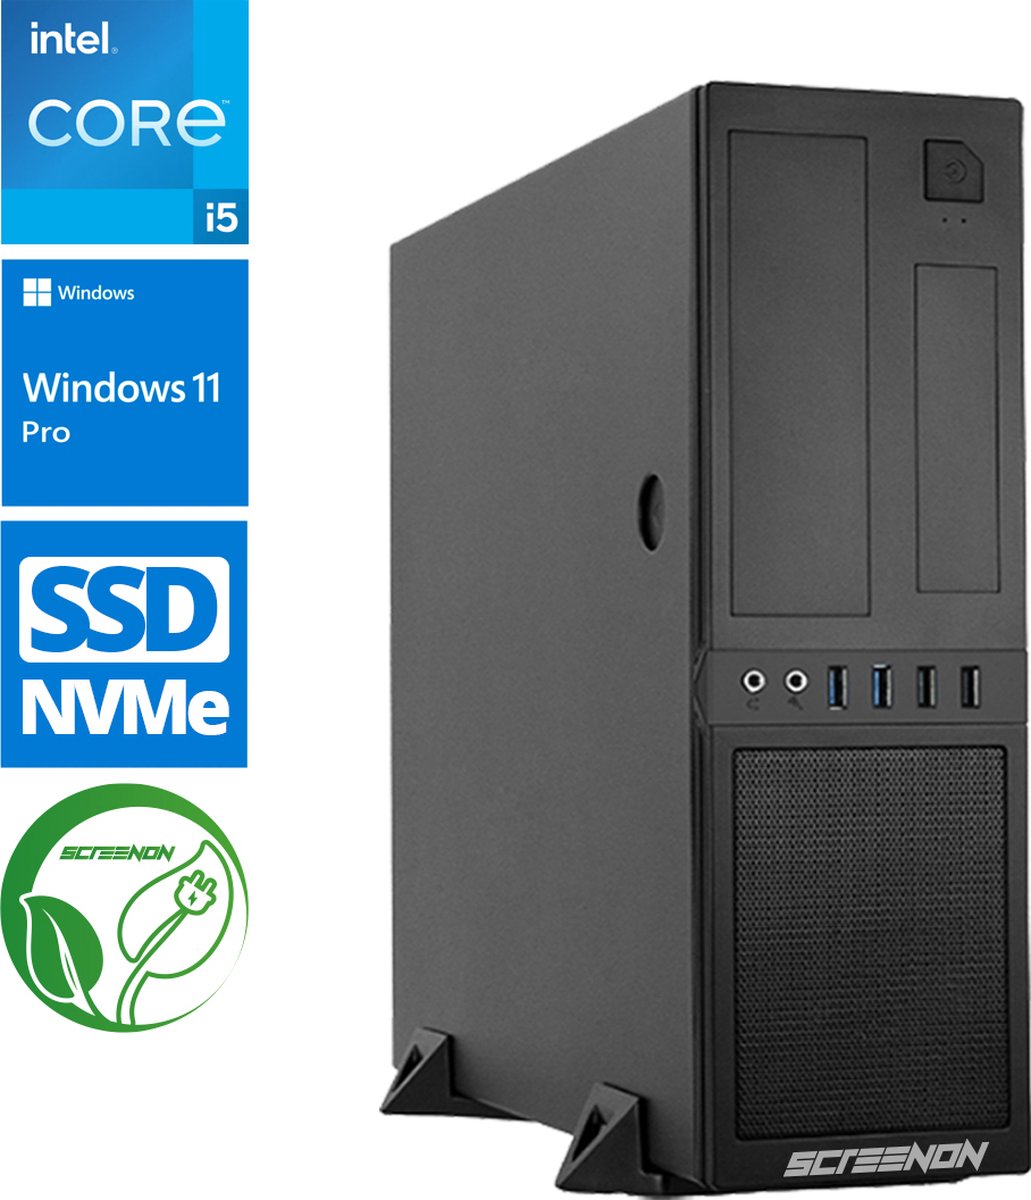 Intel Compleet PC | Intel Core i5 | 16 GB DDR4 | 1 TB SSD - NVMe | Windows 11 Pro + WiFi & Bluetooth